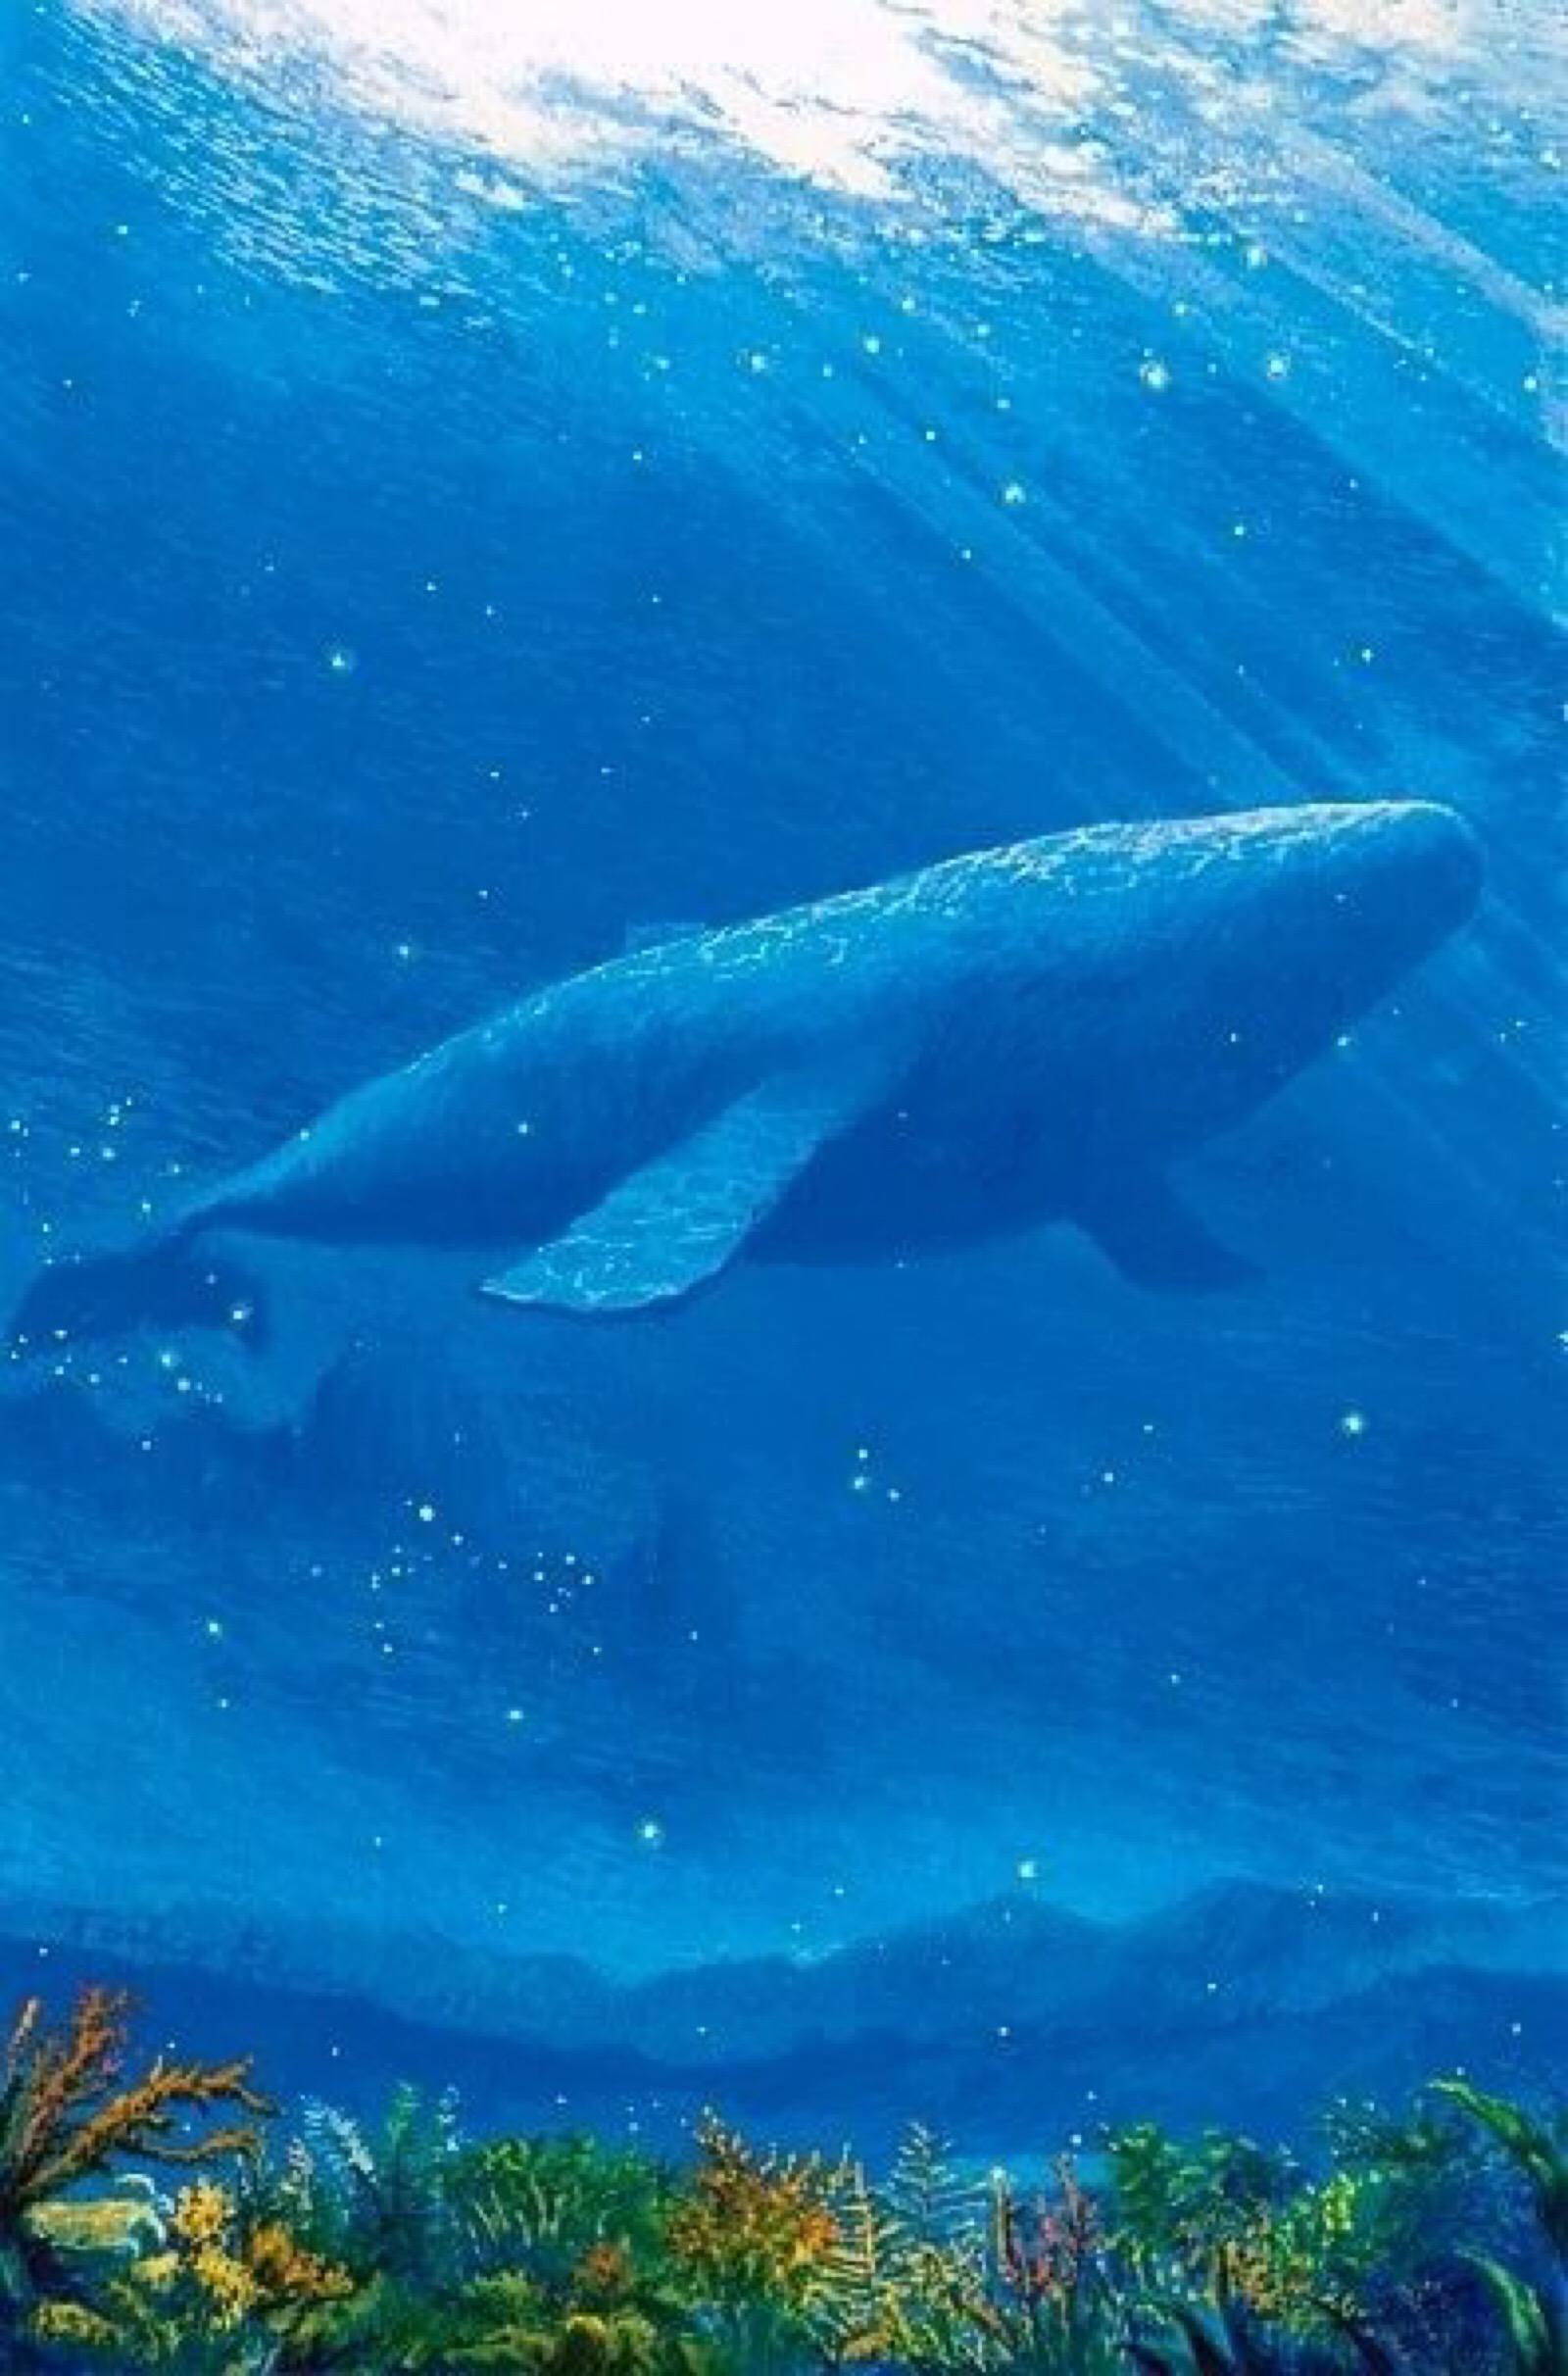 小鲸鱼手机壁纸图片